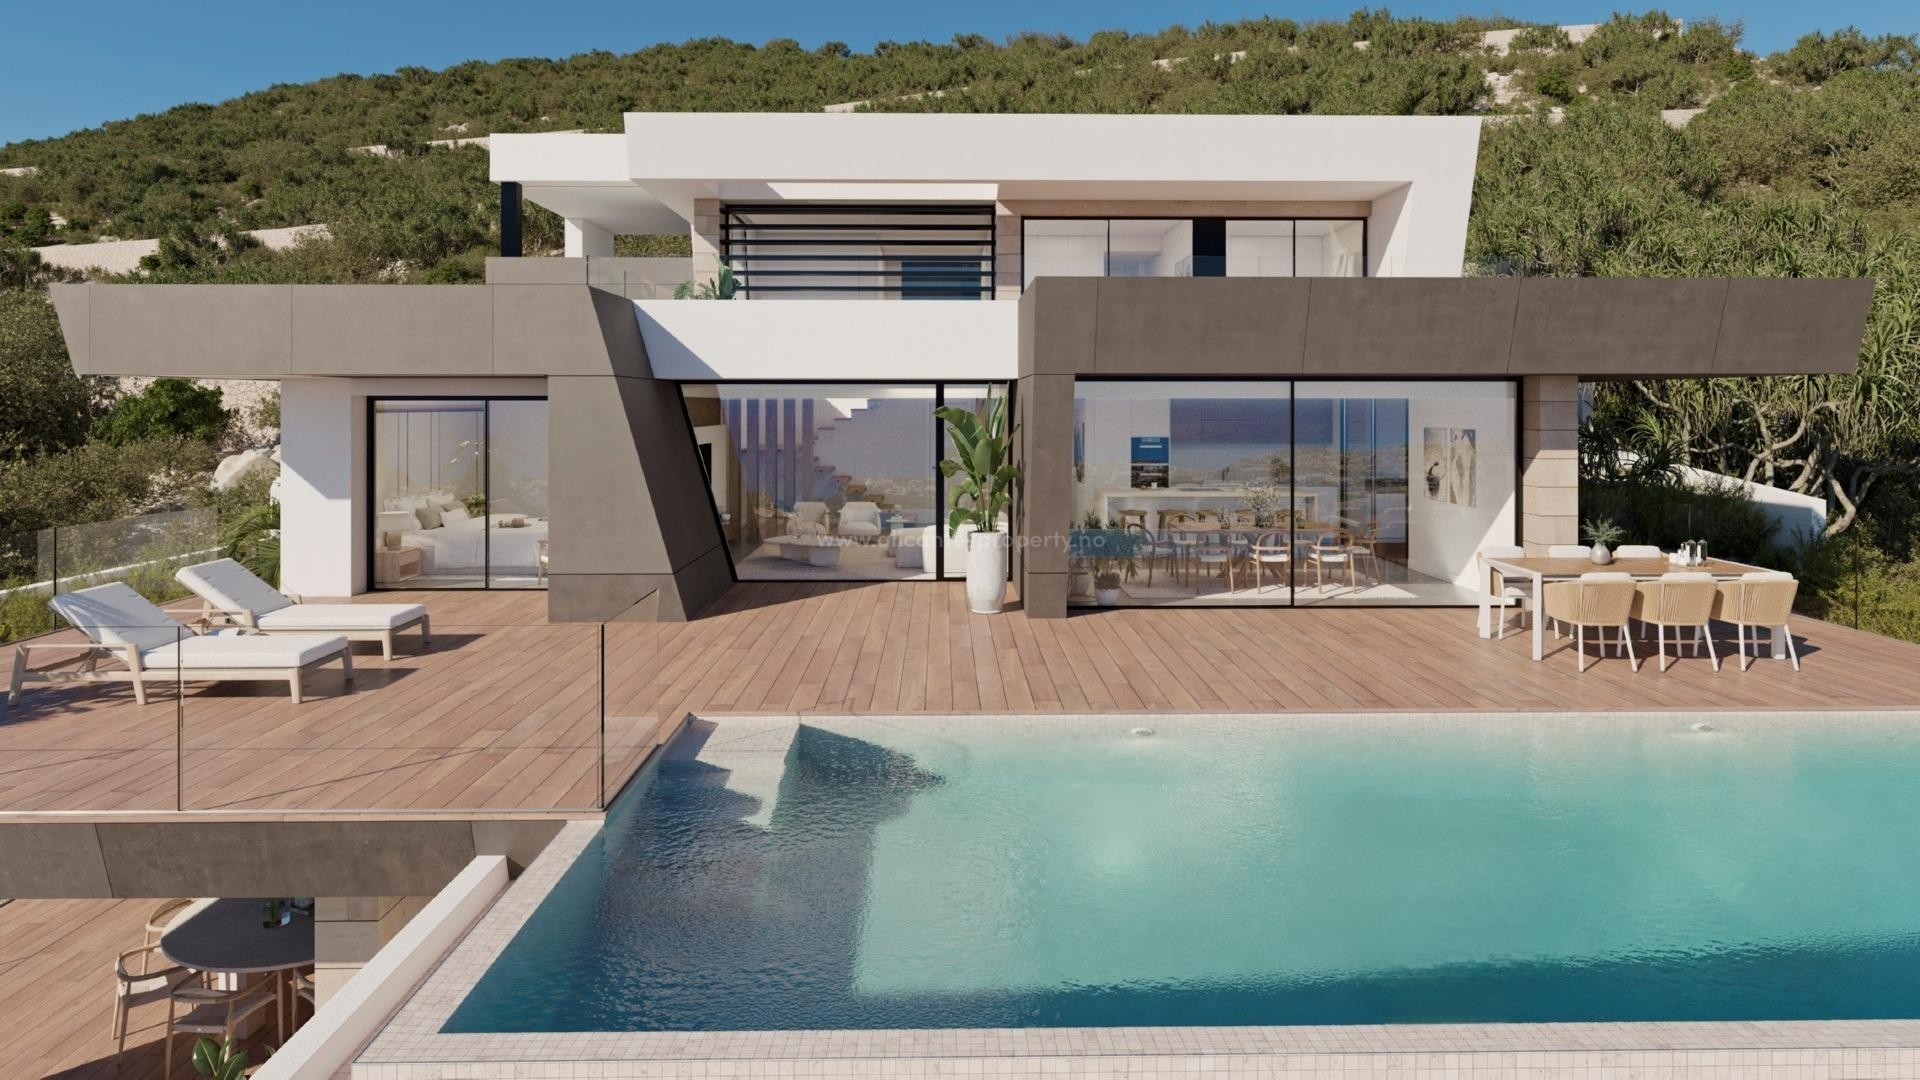 Luxury villa in the paradisiacal Cumbre del Sol, Benitachell, Alicante North, 3 bedrooms, 4 bathrooms, villa with spectacular sea views. Large pool